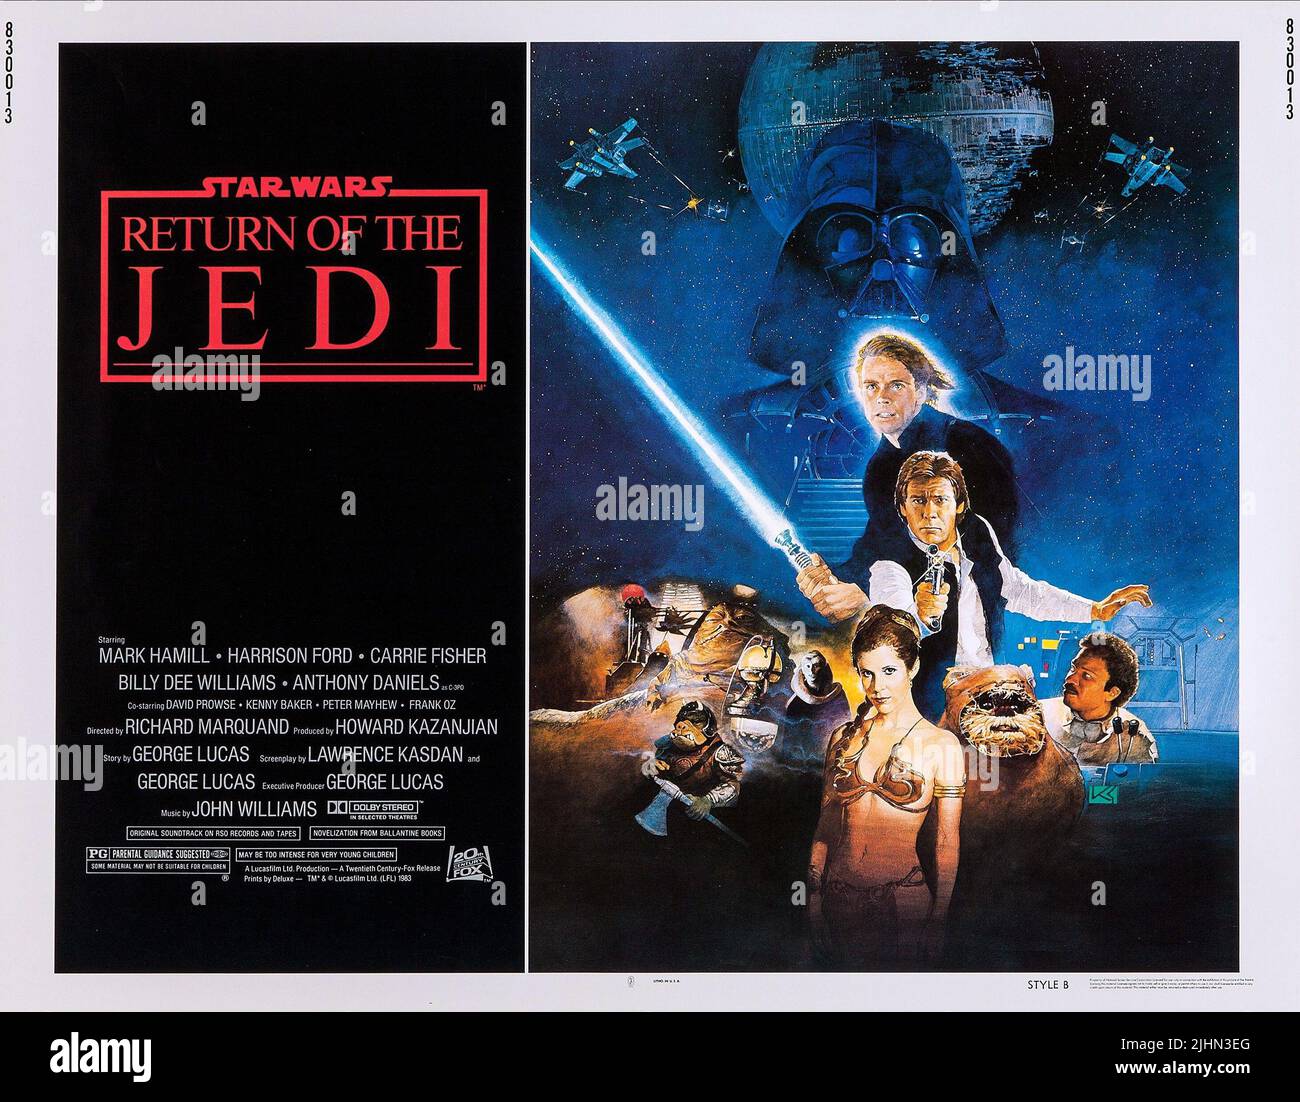 MARK HAMILL, Harrison Ford, Carrie Fisher, Billy Dee Williams, Plakat, Star Wars: Episode VI - Die Rückkehr der Jedi-Ritter, 1983 Stockfoto